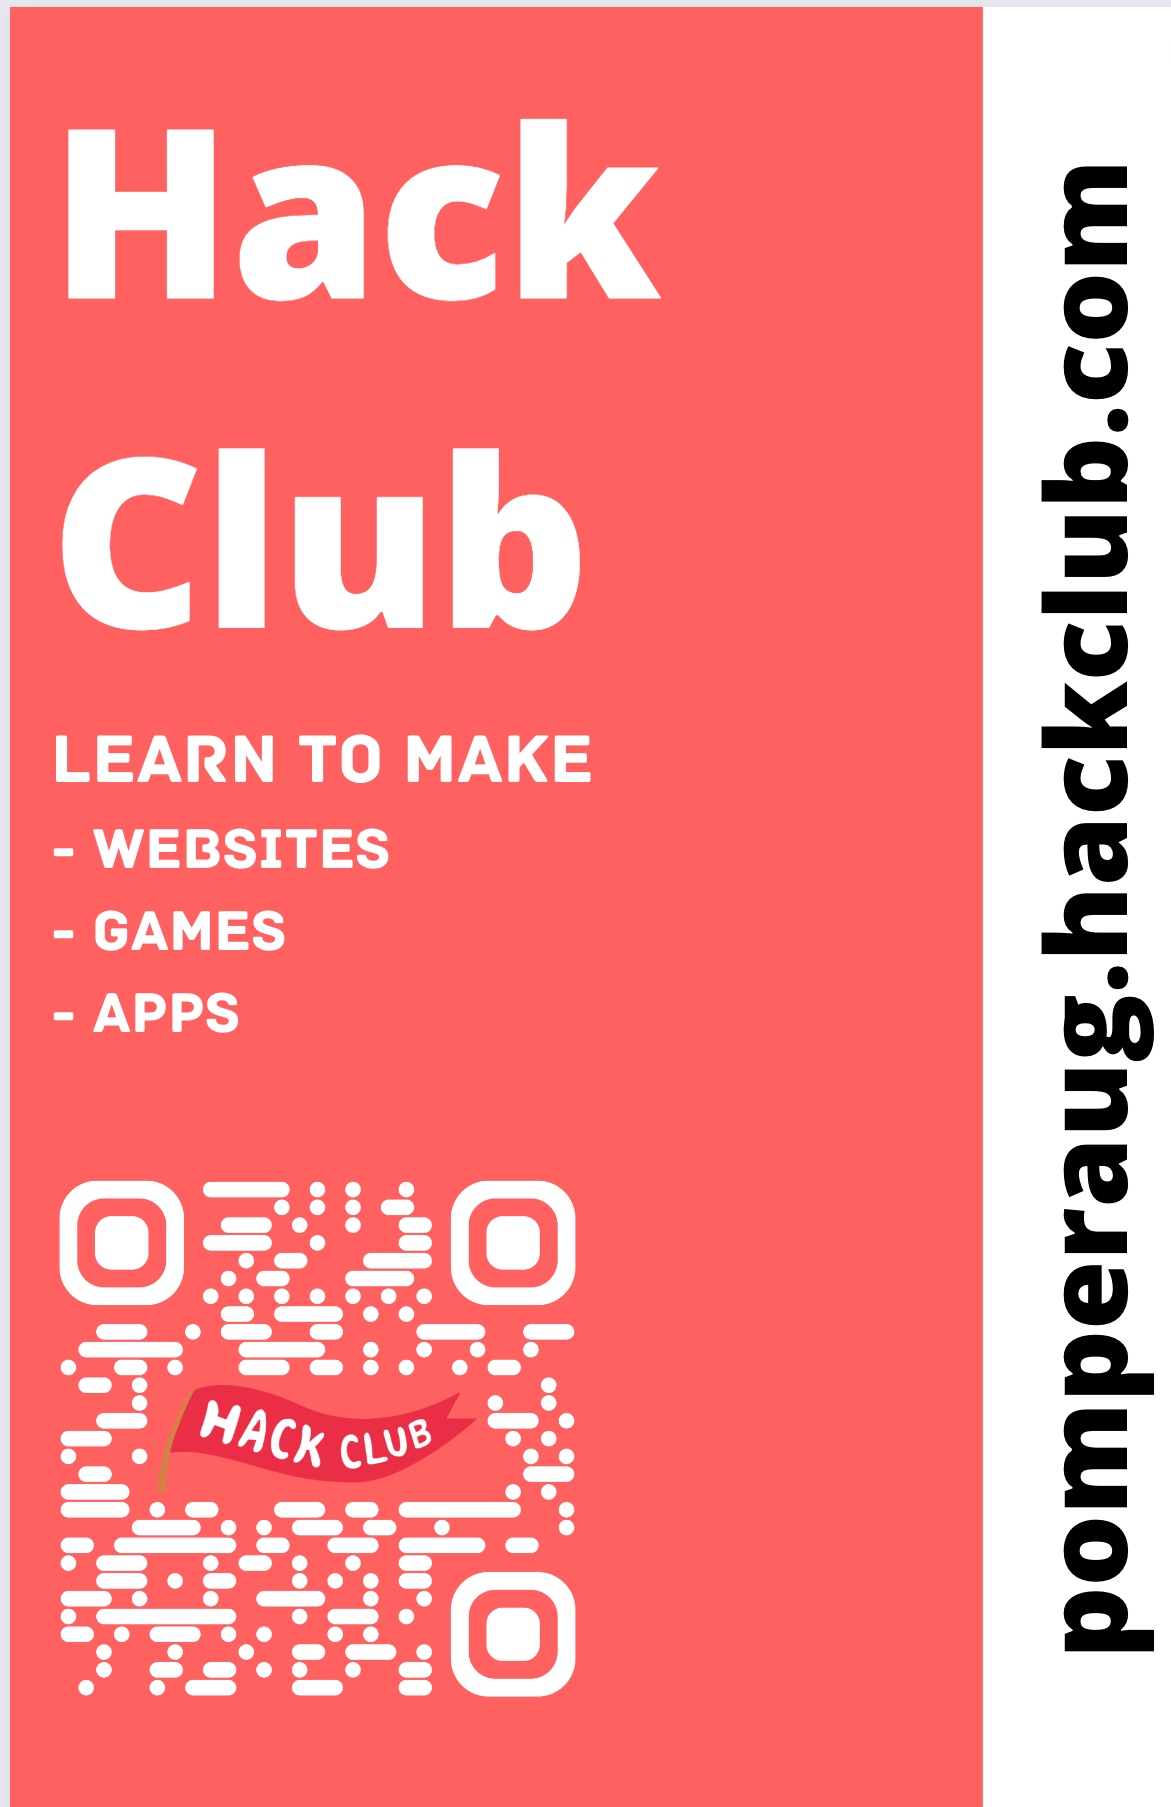 https://cloud-ee30xat63-hack-club-bot.vercel.app/0image.png